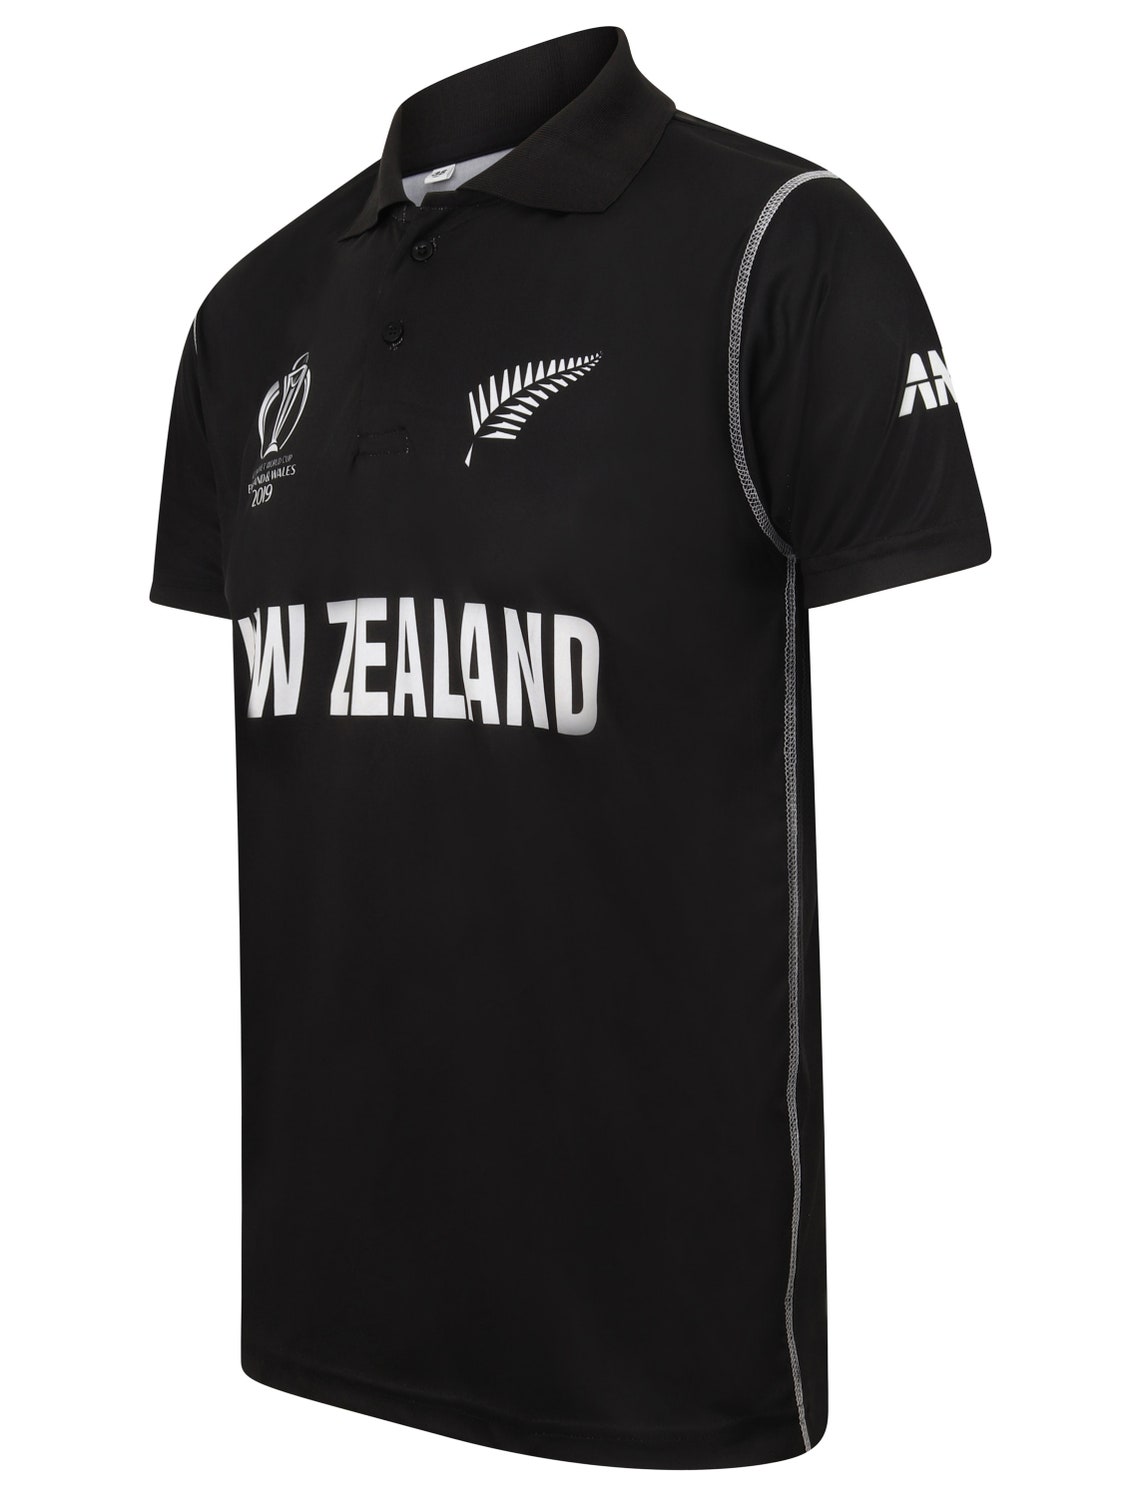 New Zealand Cricket Shirt New Zealand Cricket Jersey World Cup 2019 ...